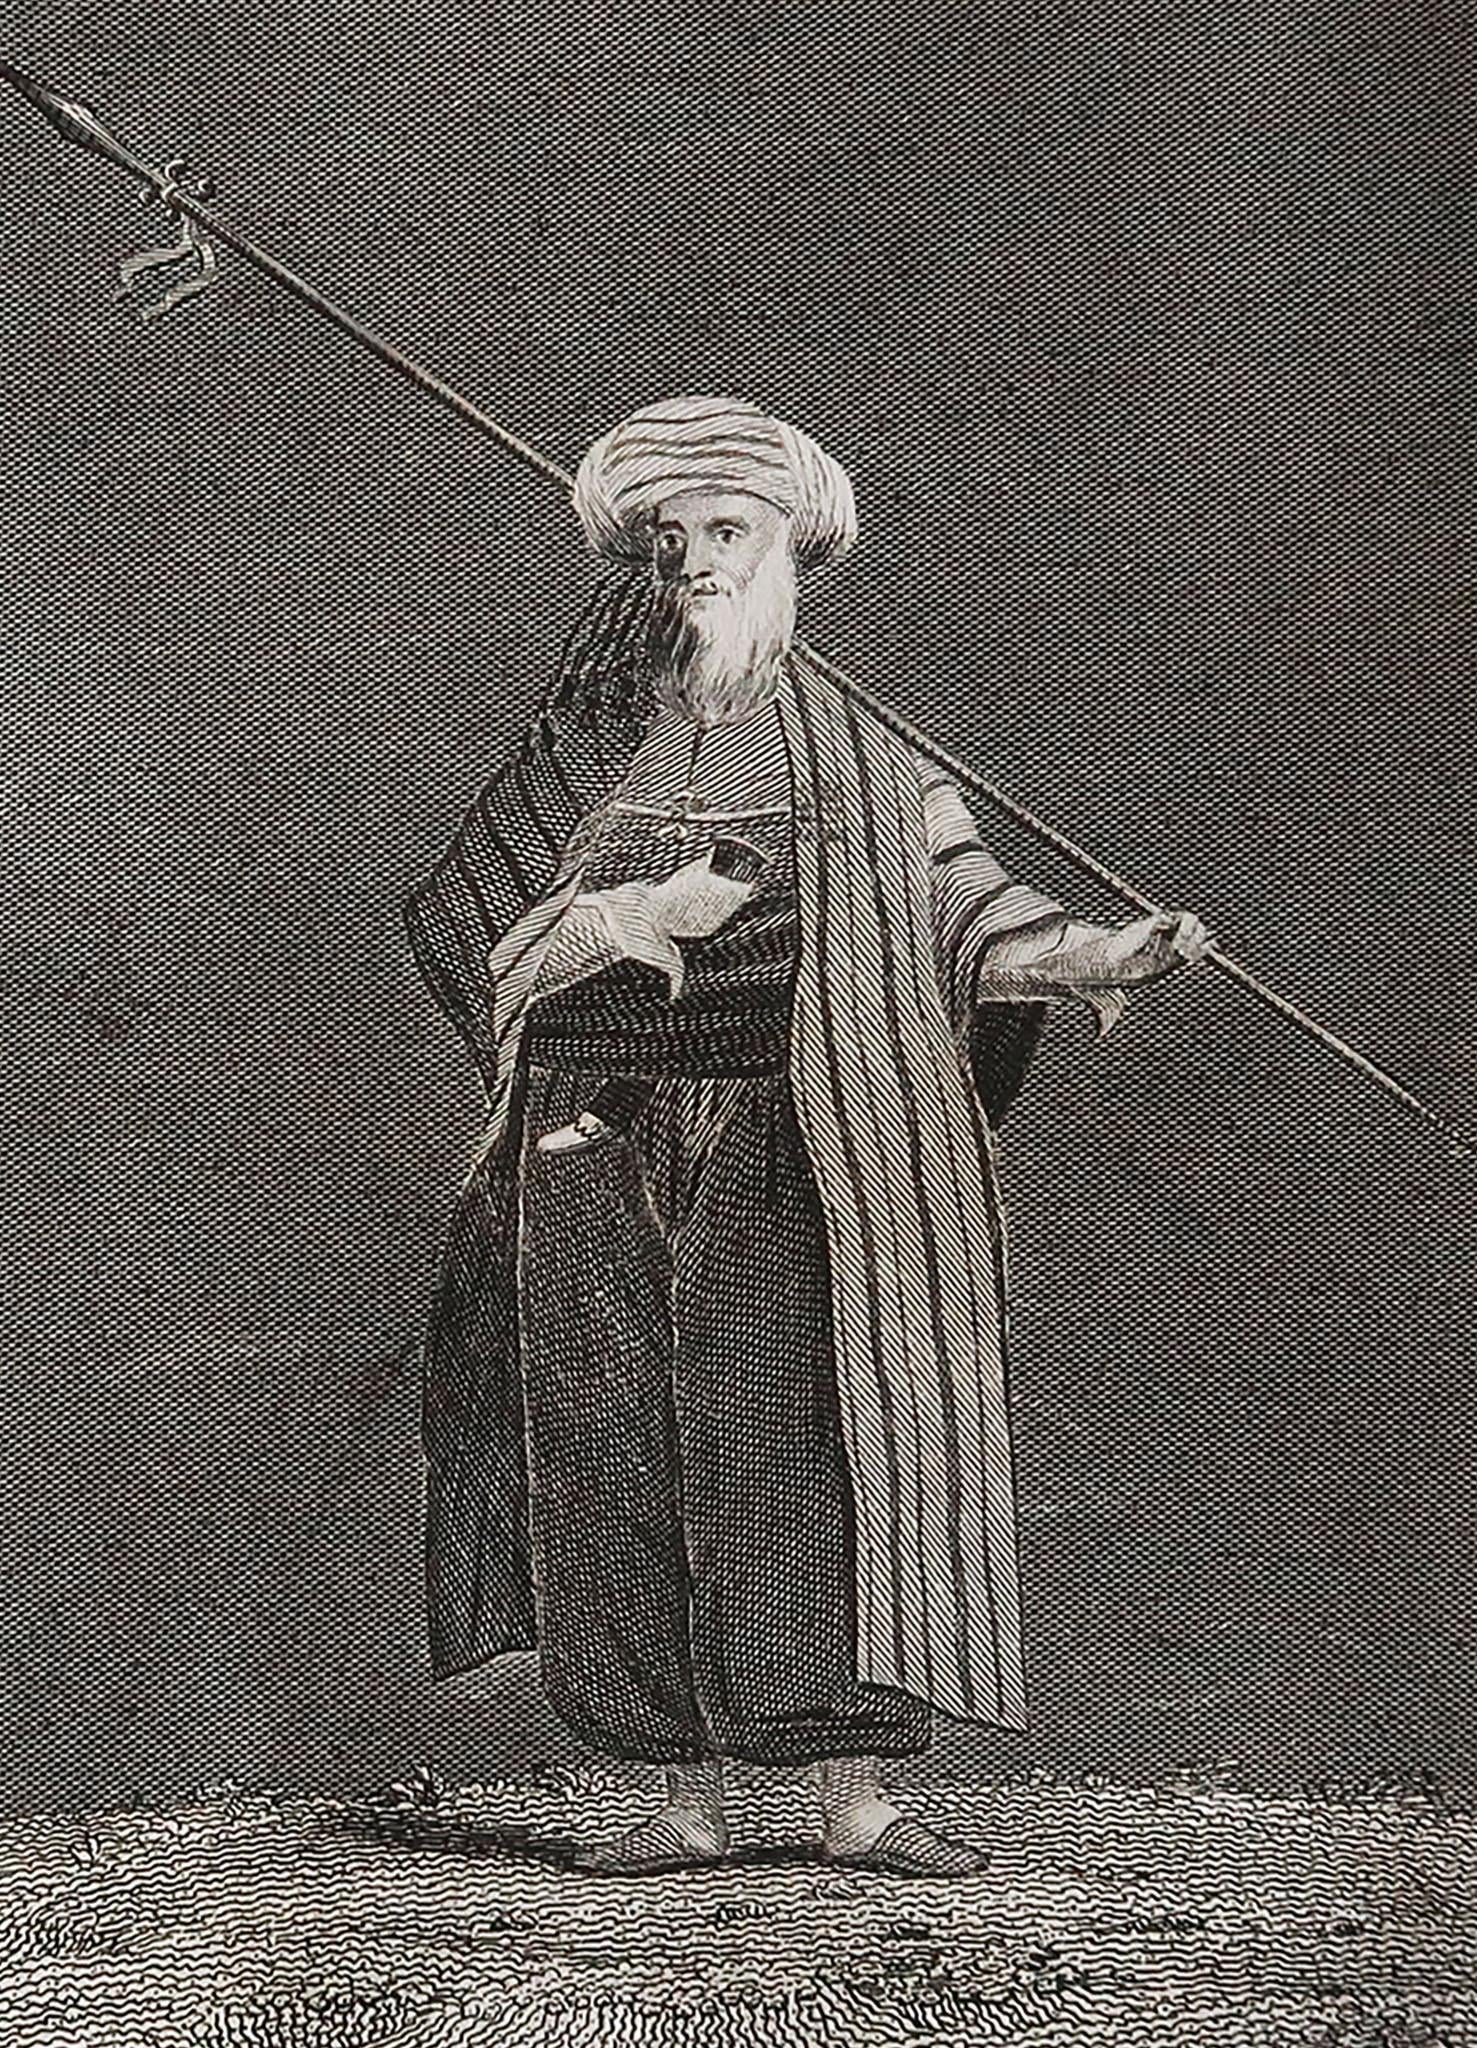 Großartiges Bild eines arabischen Scheichs

Kupferstich von T. Clerk

Herausgegeben von Mackenzie und Dent. 1817

Ungerahmt.